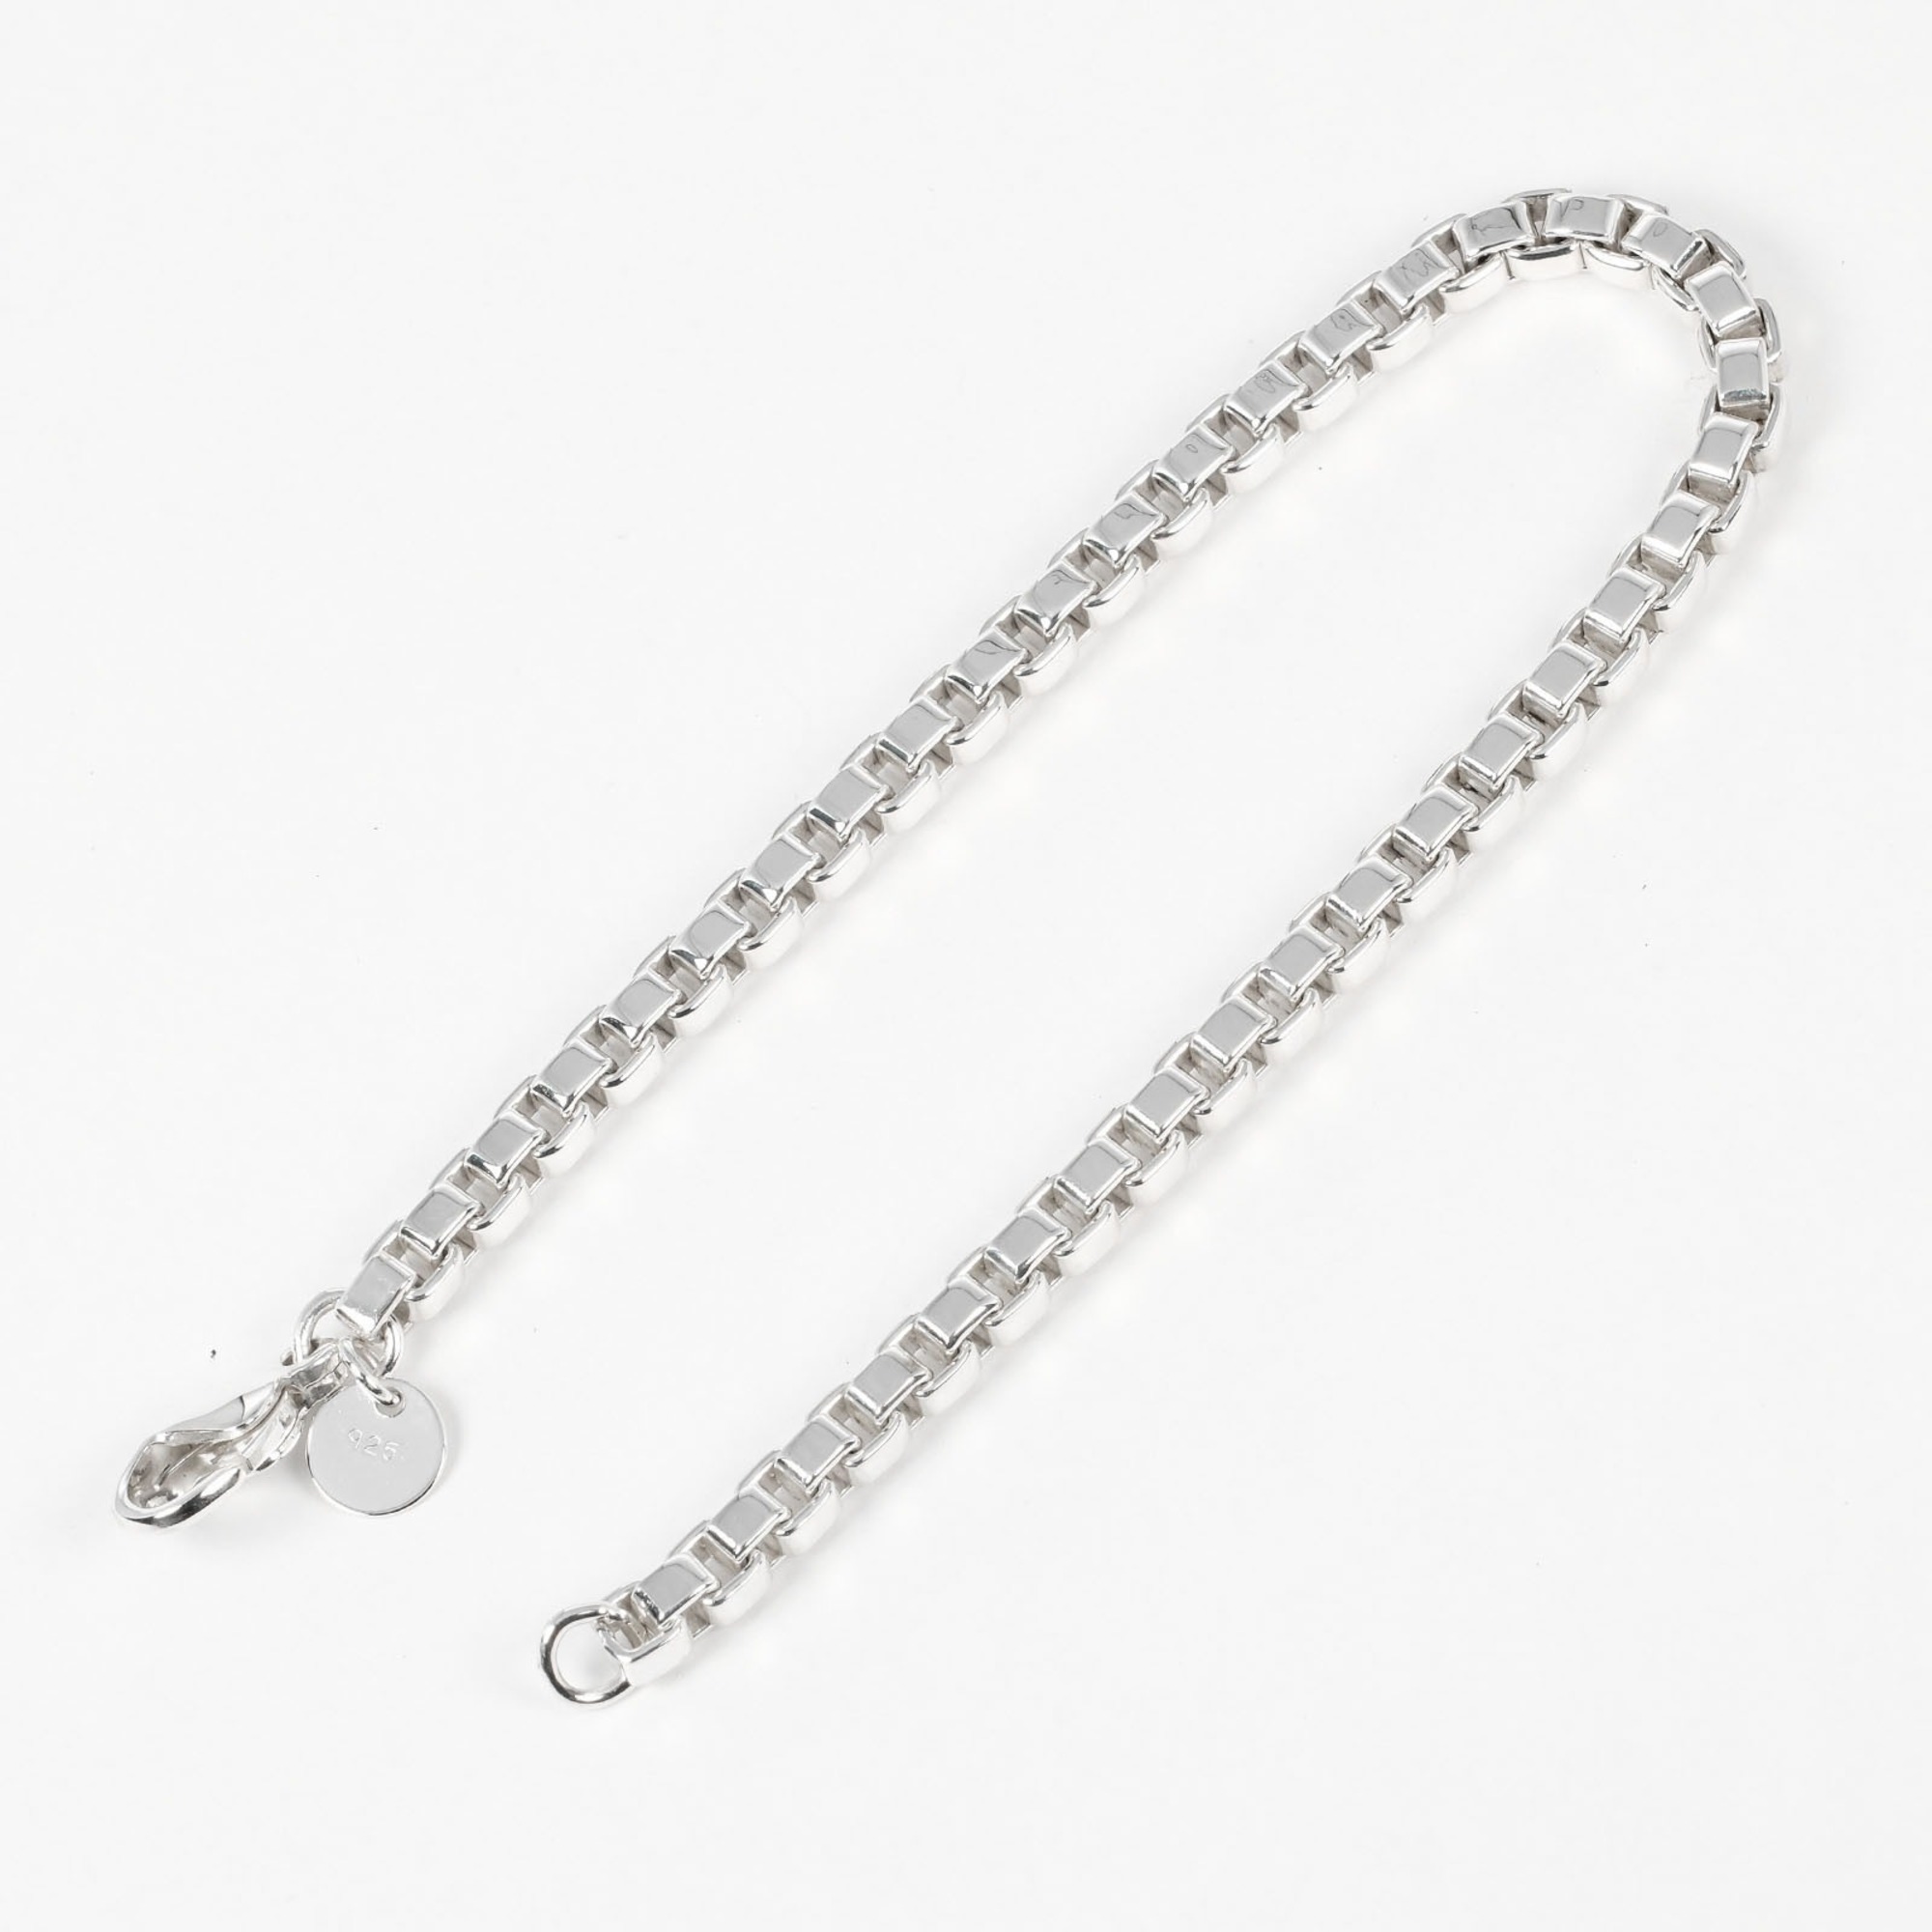 Tiffany & Co. Venetian Bracelet, 925 Silver, approx. 15.47g I132724021